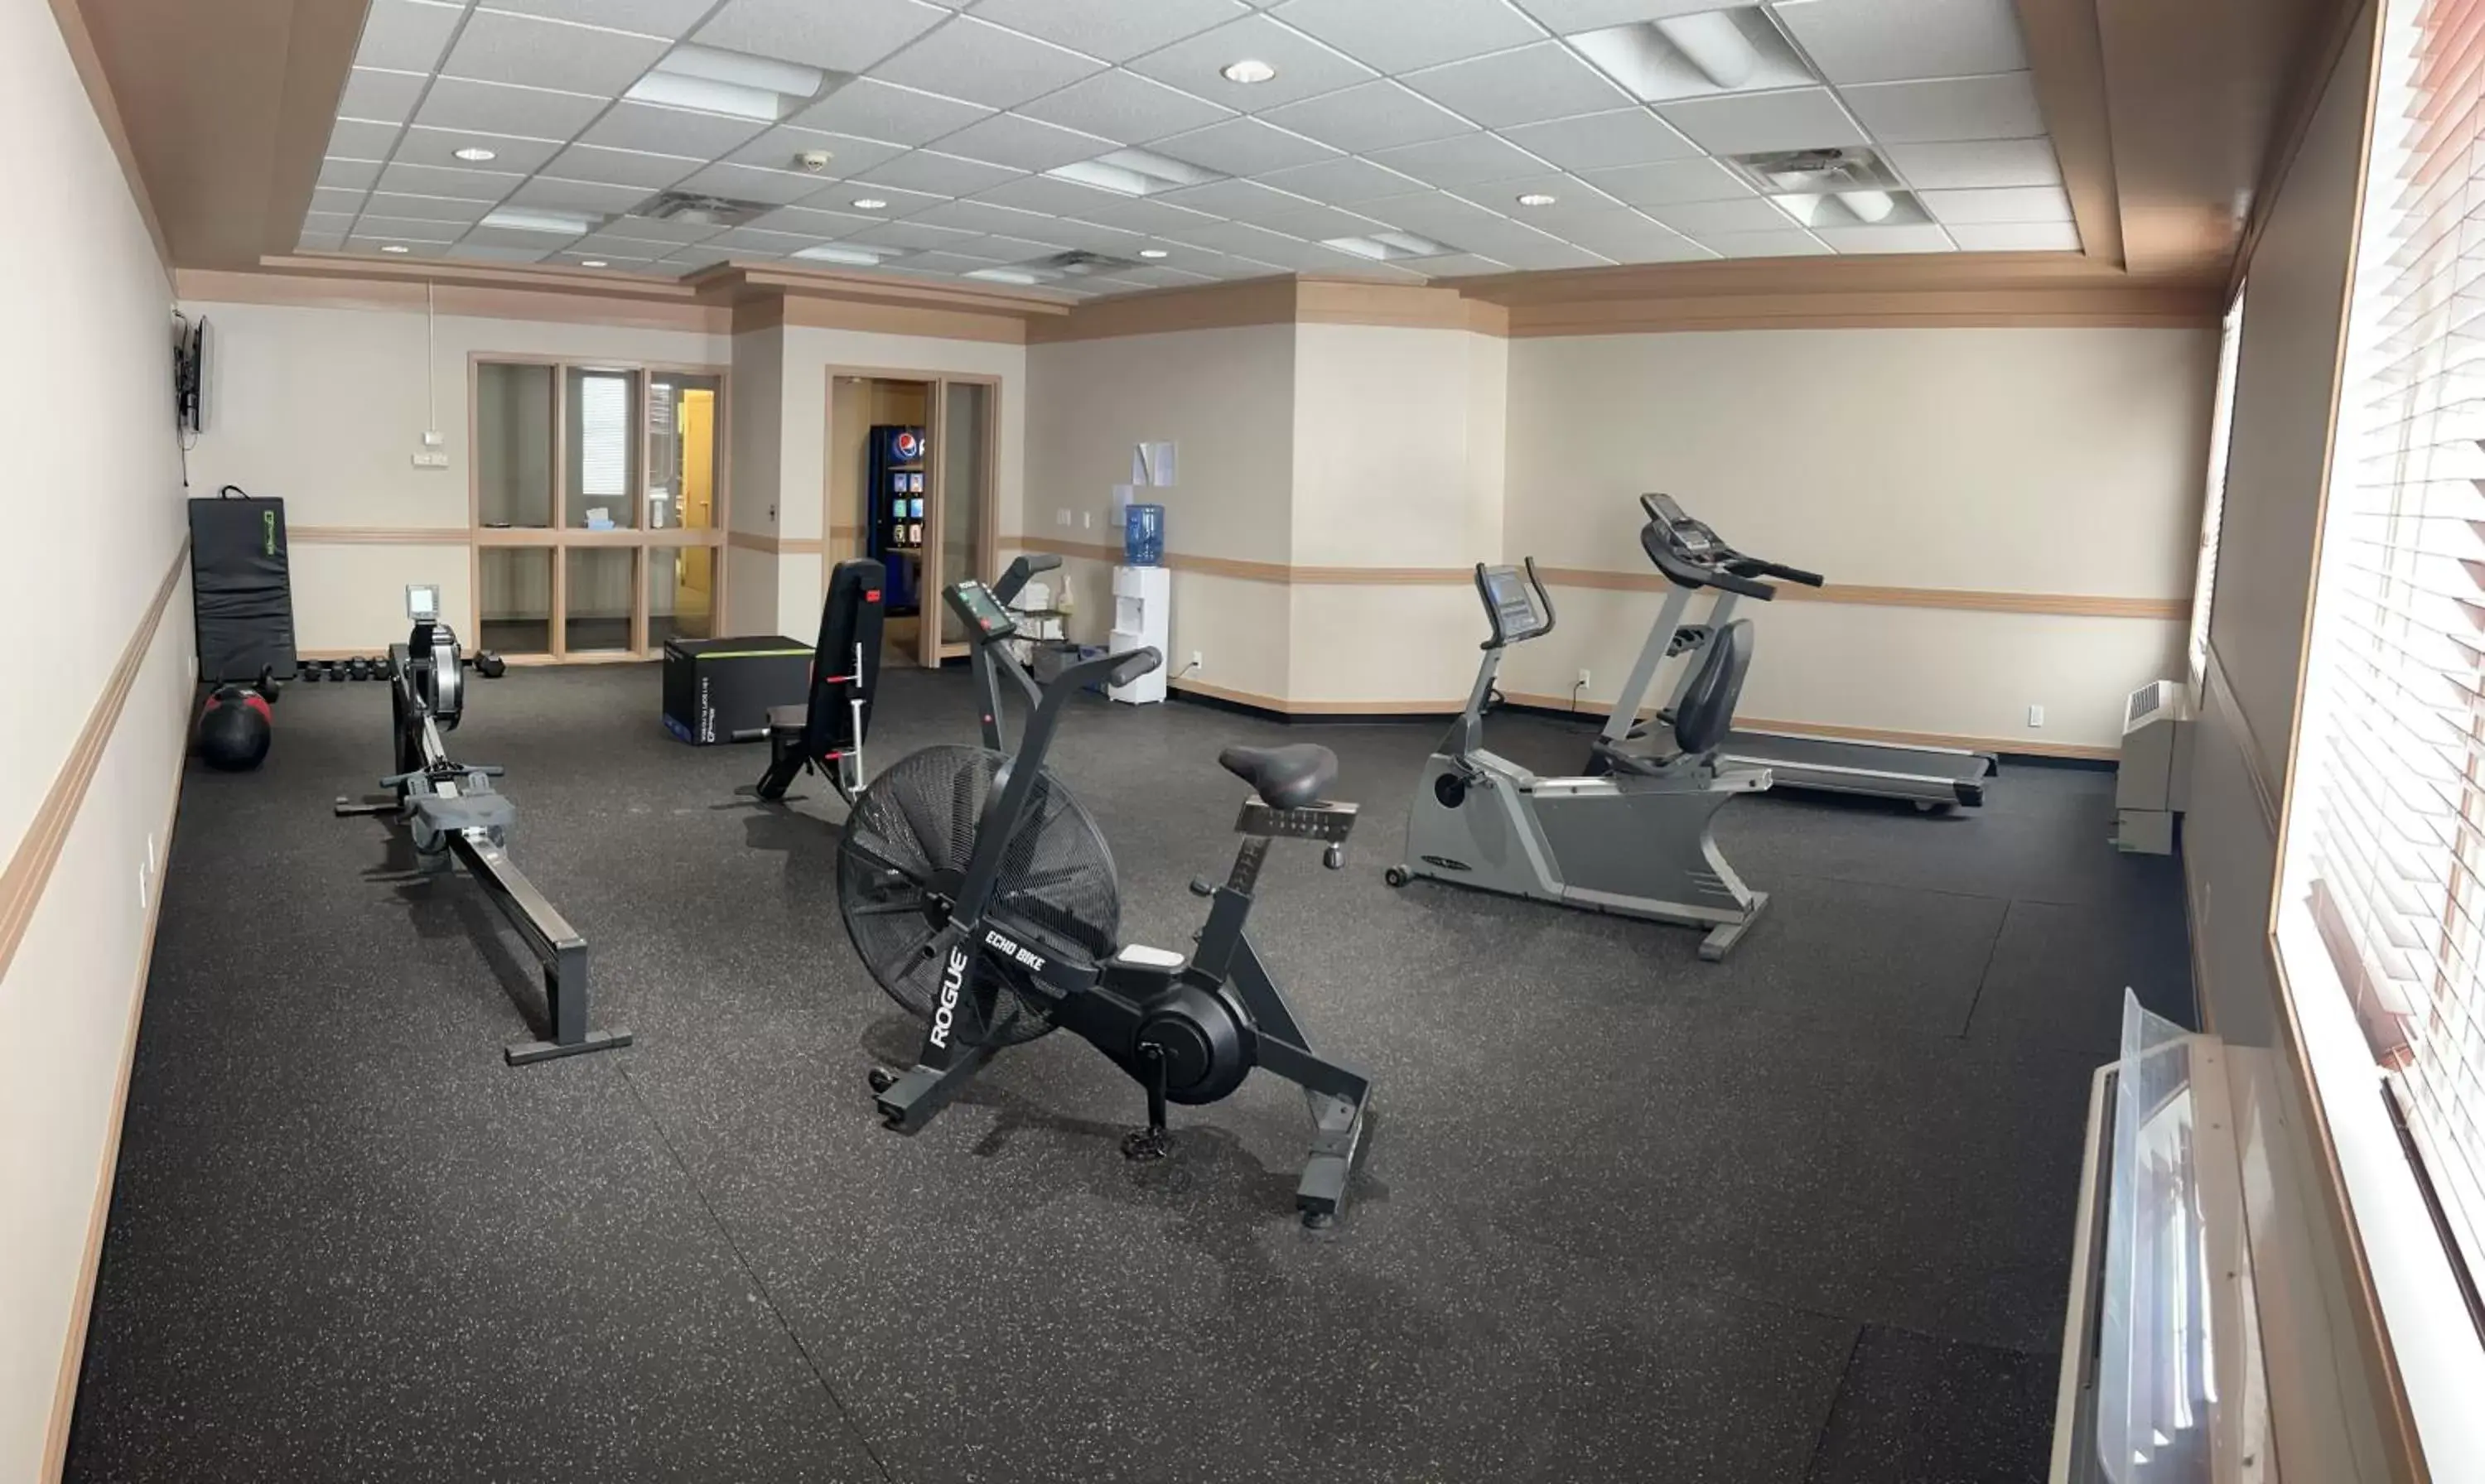 Fitness centre/facilities, Fitness Center/Facilities in Hotel Estevan